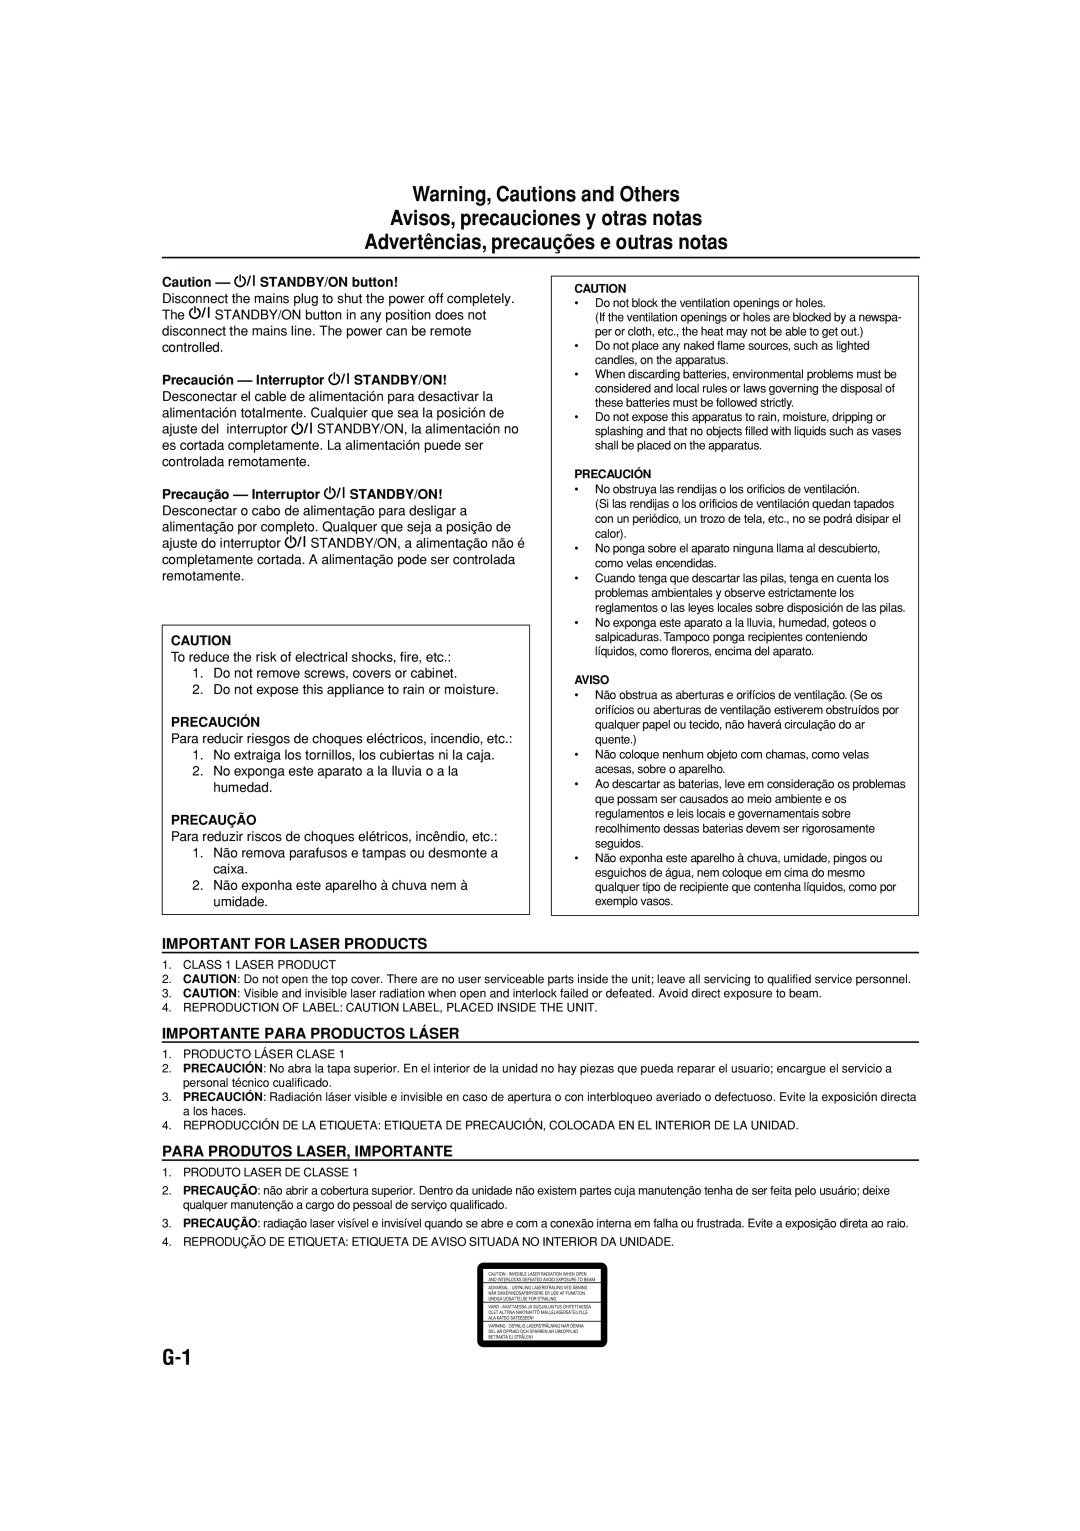 JVC MX-GB5 manual Warning, Cautions and Others Avisos, precauciones y otras notas, Advertências, precauções e outras notas 